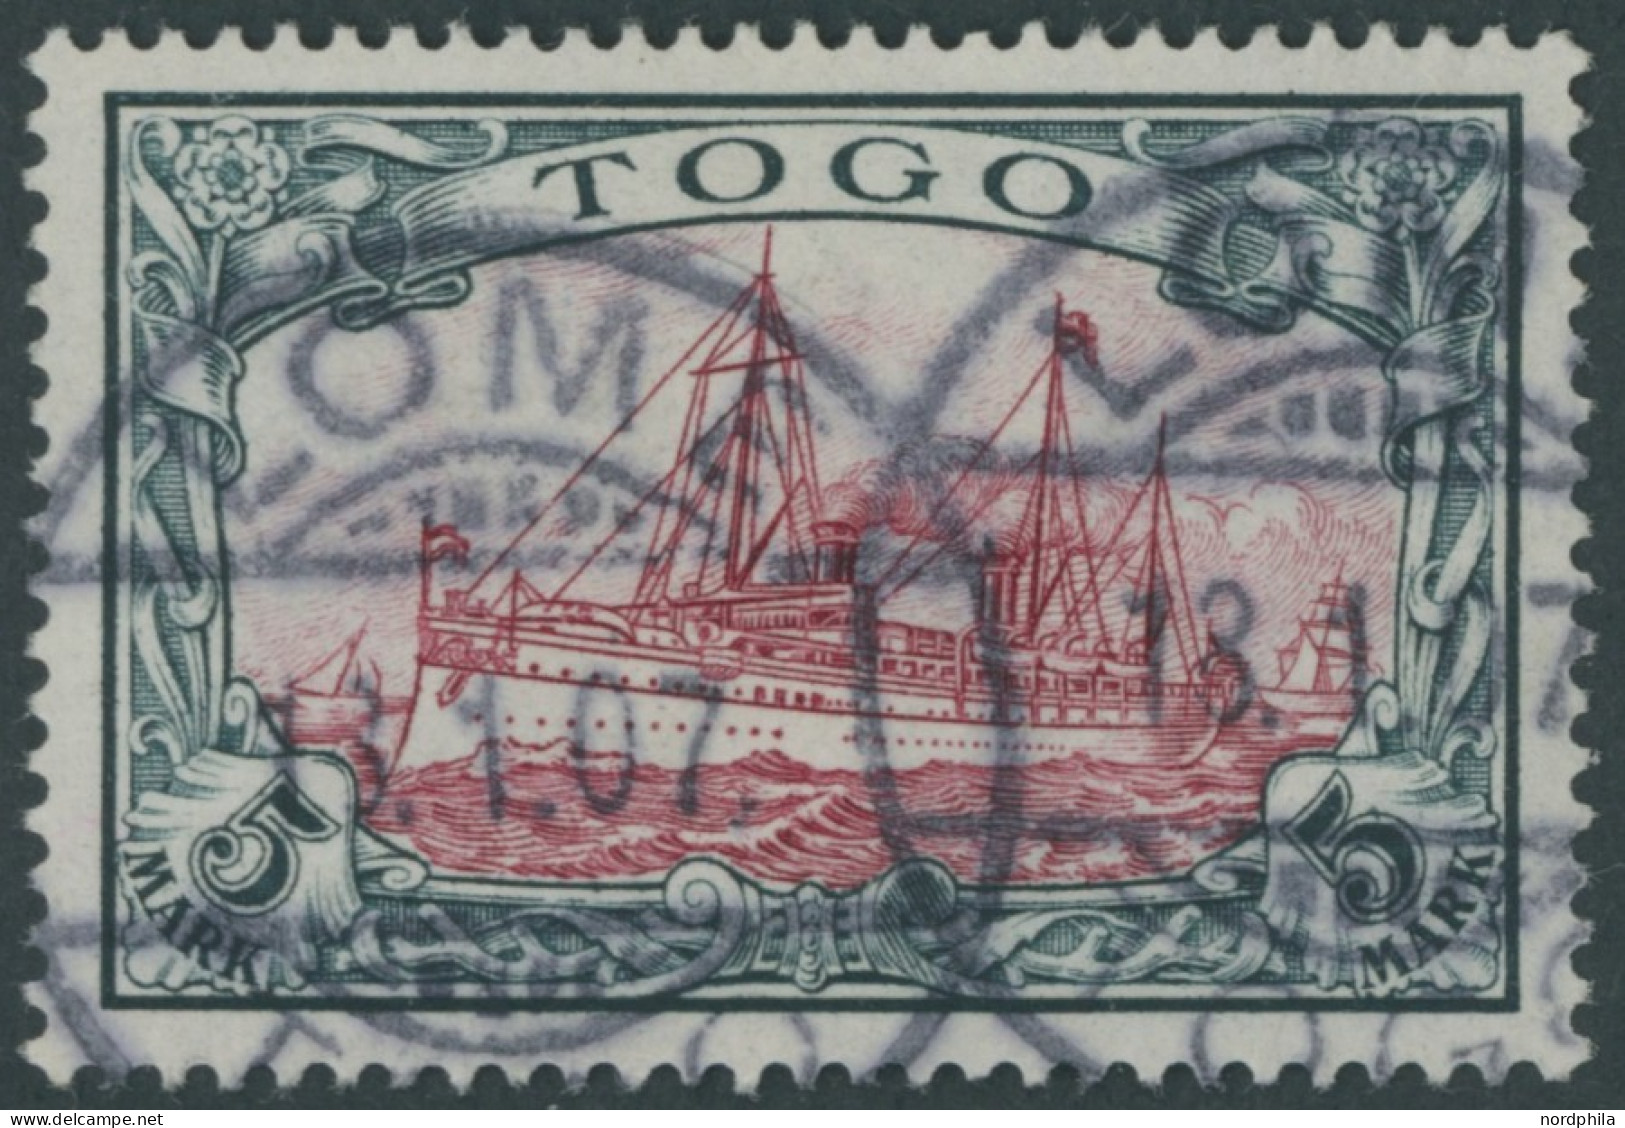 TOGO 19I O, 1900, 5 M. Grünschwarz/bräunlichkarmin, Ohne Wz., Mit Plattenfehler Wolke (Retusche) Zwischen Den Halteseile - Togo